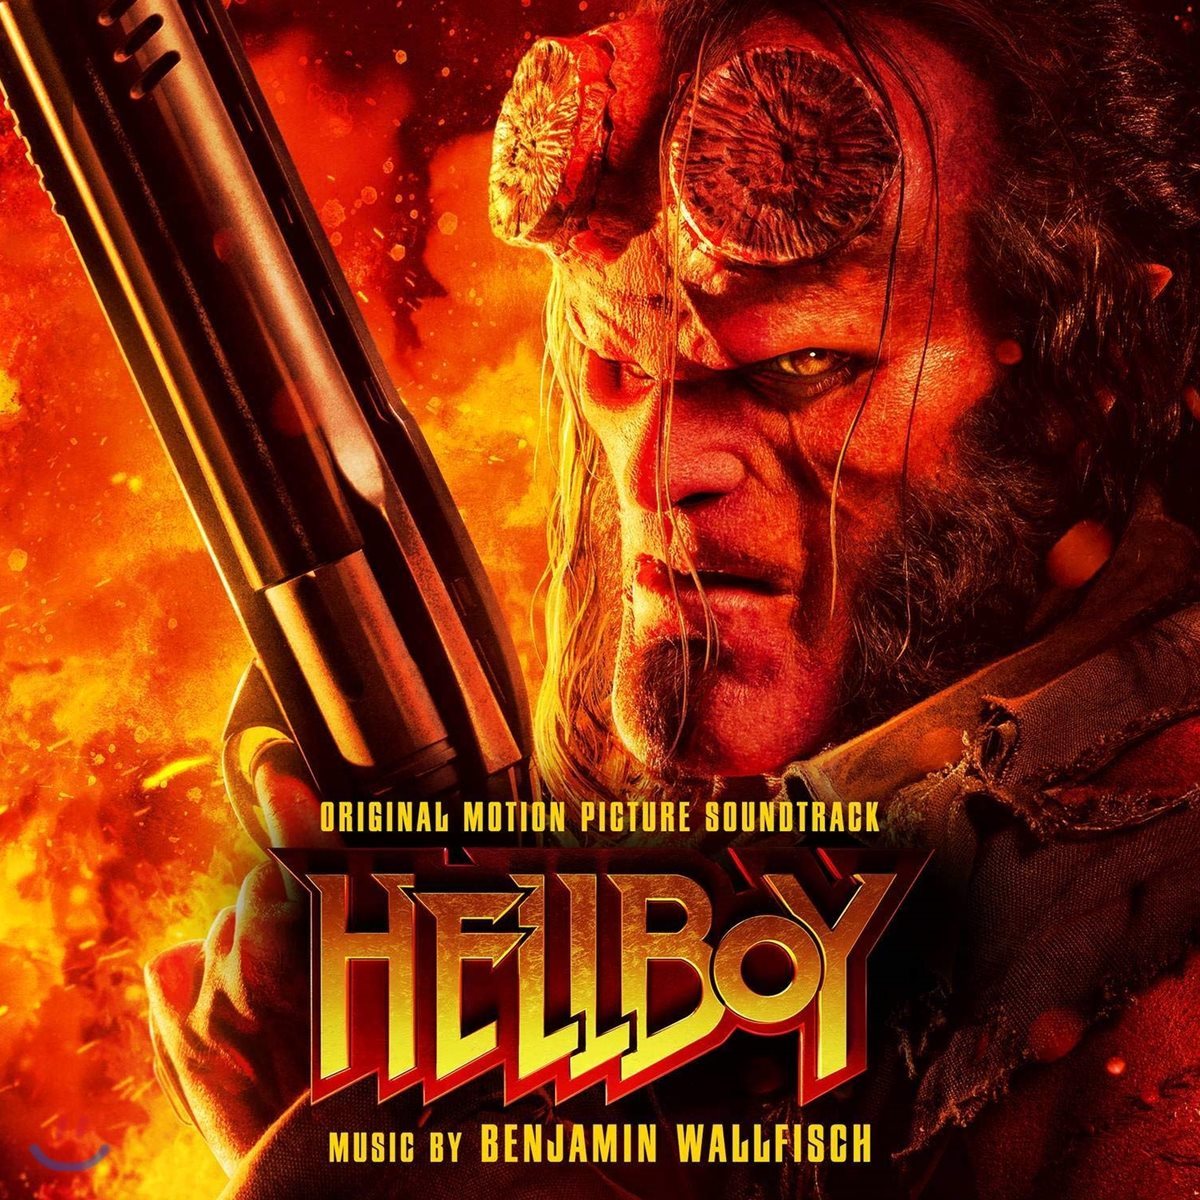 헬보이 영화음악 (Hellboy OST by Benjamin Wallfisch)